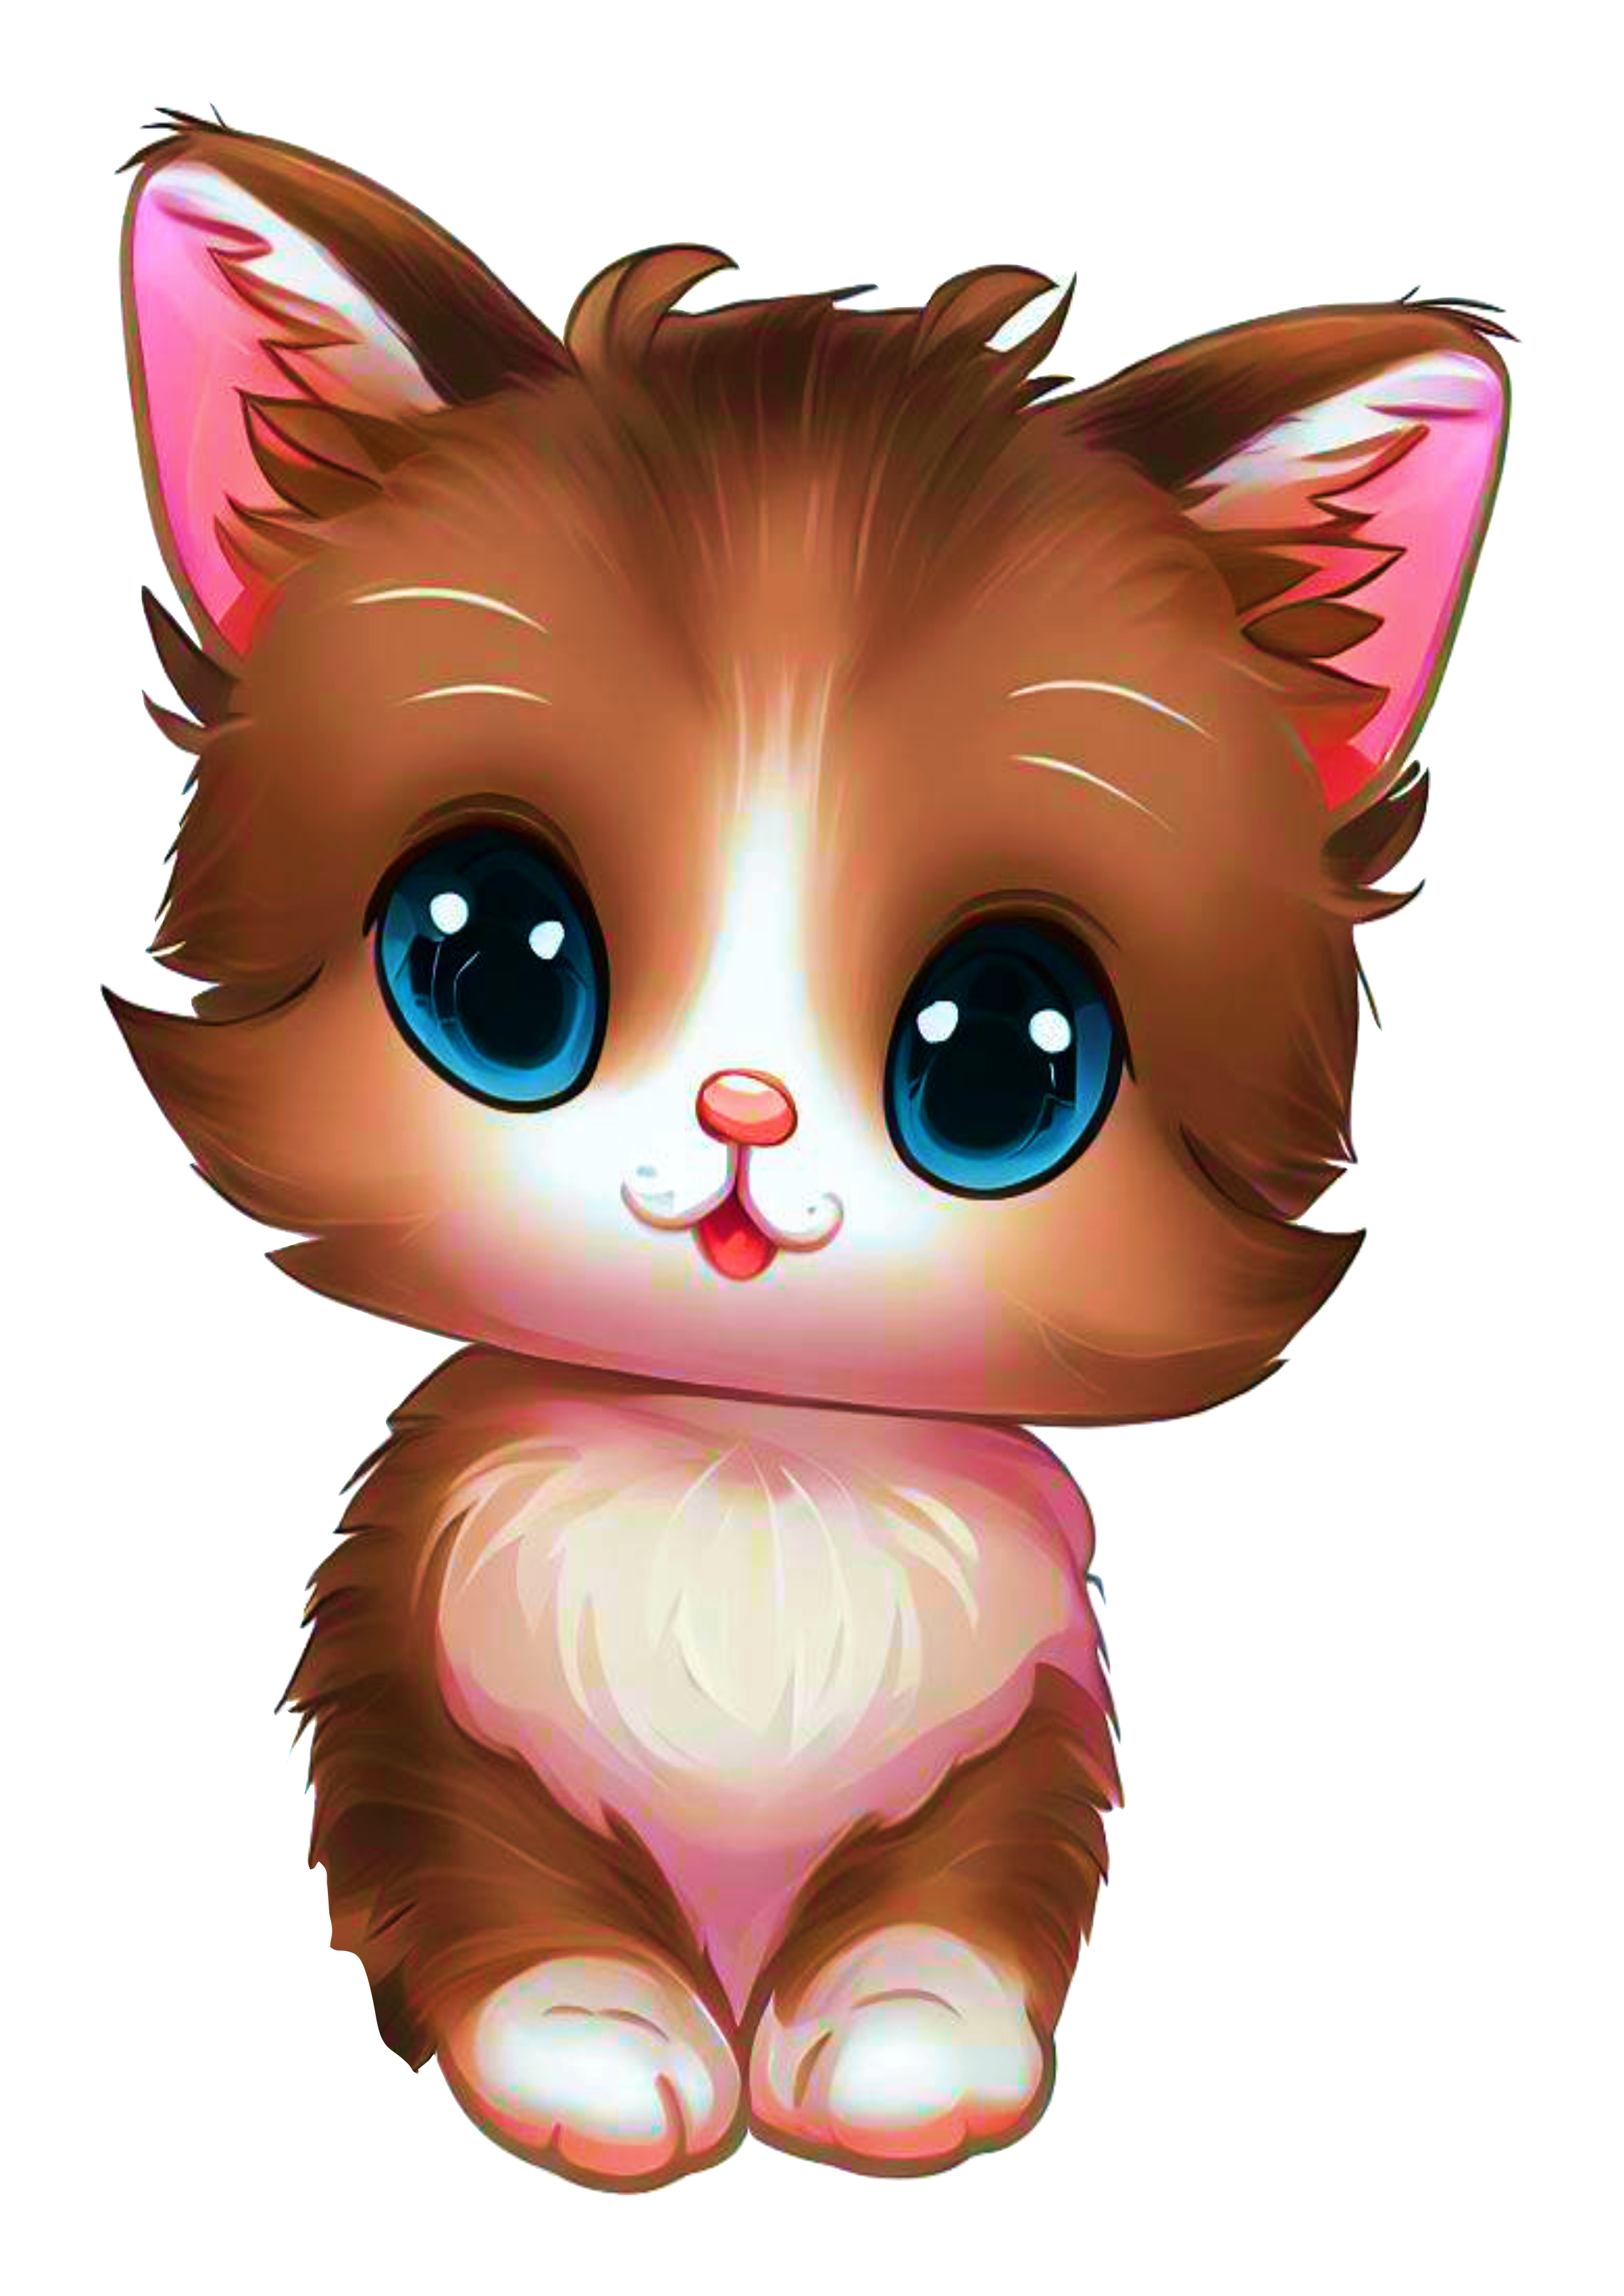 Gatinho bebê sapeca fofinho cute cat desenho artístico animal de estimação imagem sem fundo png